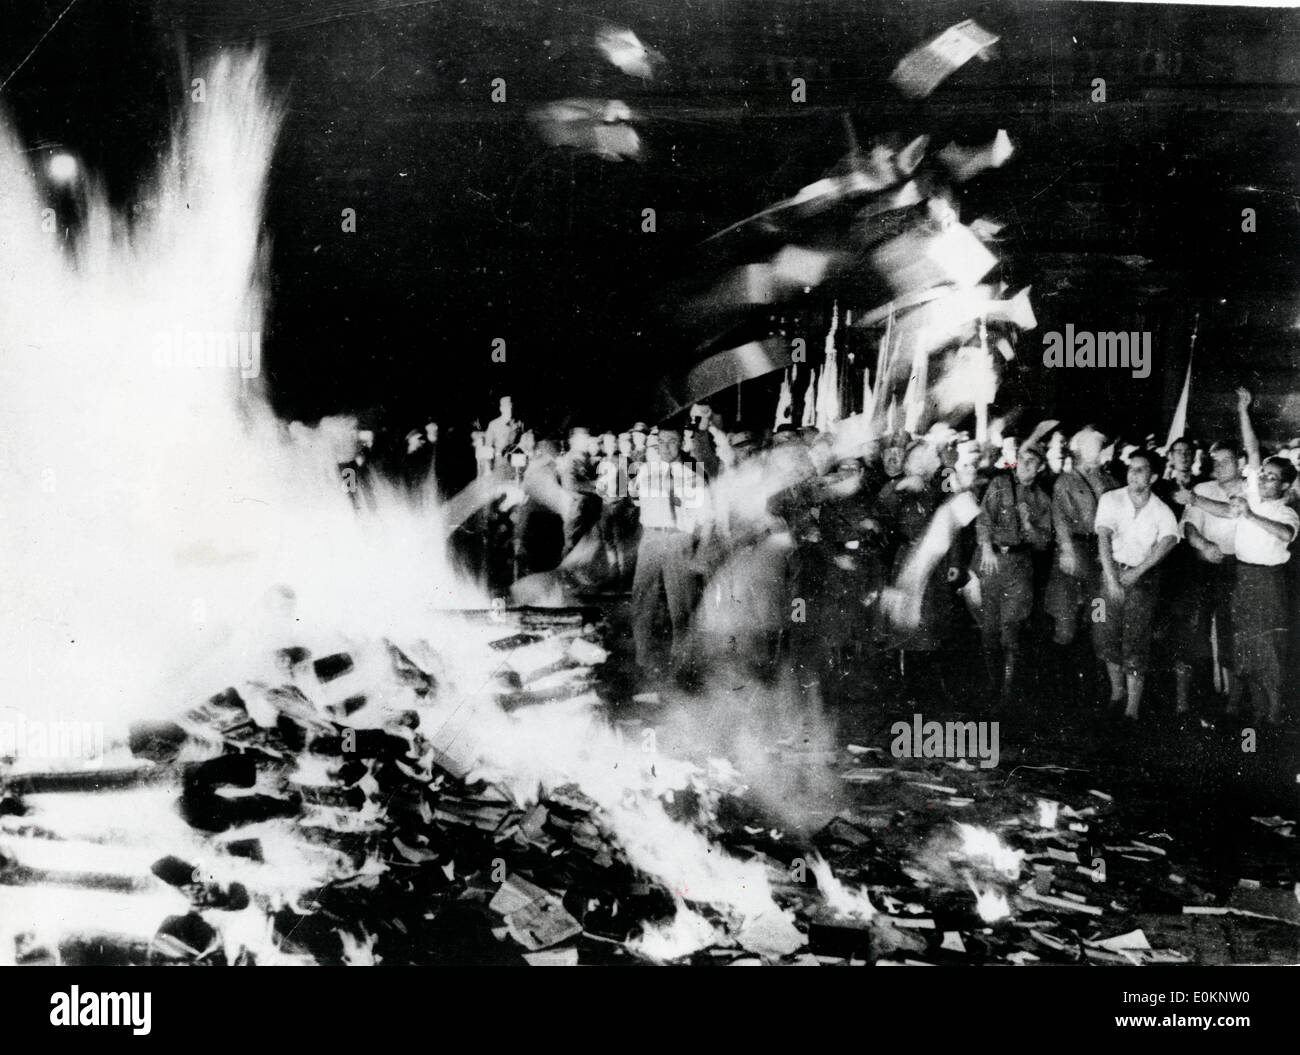 tudenten und andere Nazis gesehen, wie sie "antideutschen" Literatur auf dem riesigen Lagerfeuer werfen Stockfoto